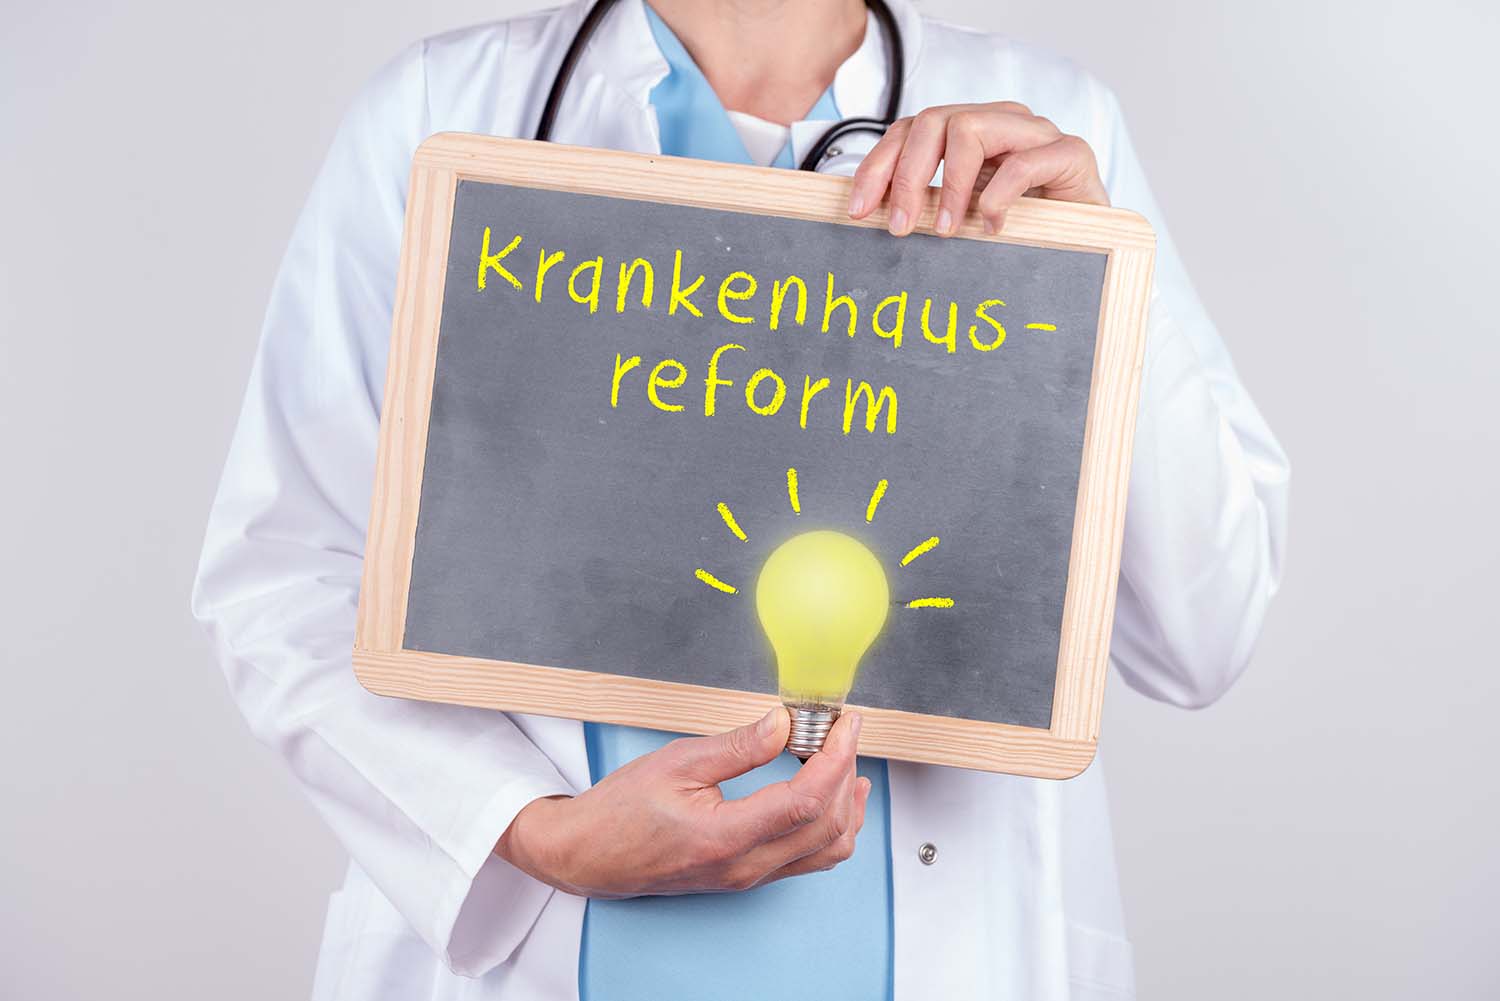 Nach einem abermaligen Treffen von Bund und Ländern verkündet Gesundheitsminister Prof. Karl Lauterbach (SPD) einen Durchbruch: Über den Sommer wolle er den Gesetzentwurf für die umstrittene Krankenhausreform vorbereiten. Doch an einem entscheidenden Punkt besteht noch keine Einigkeit.